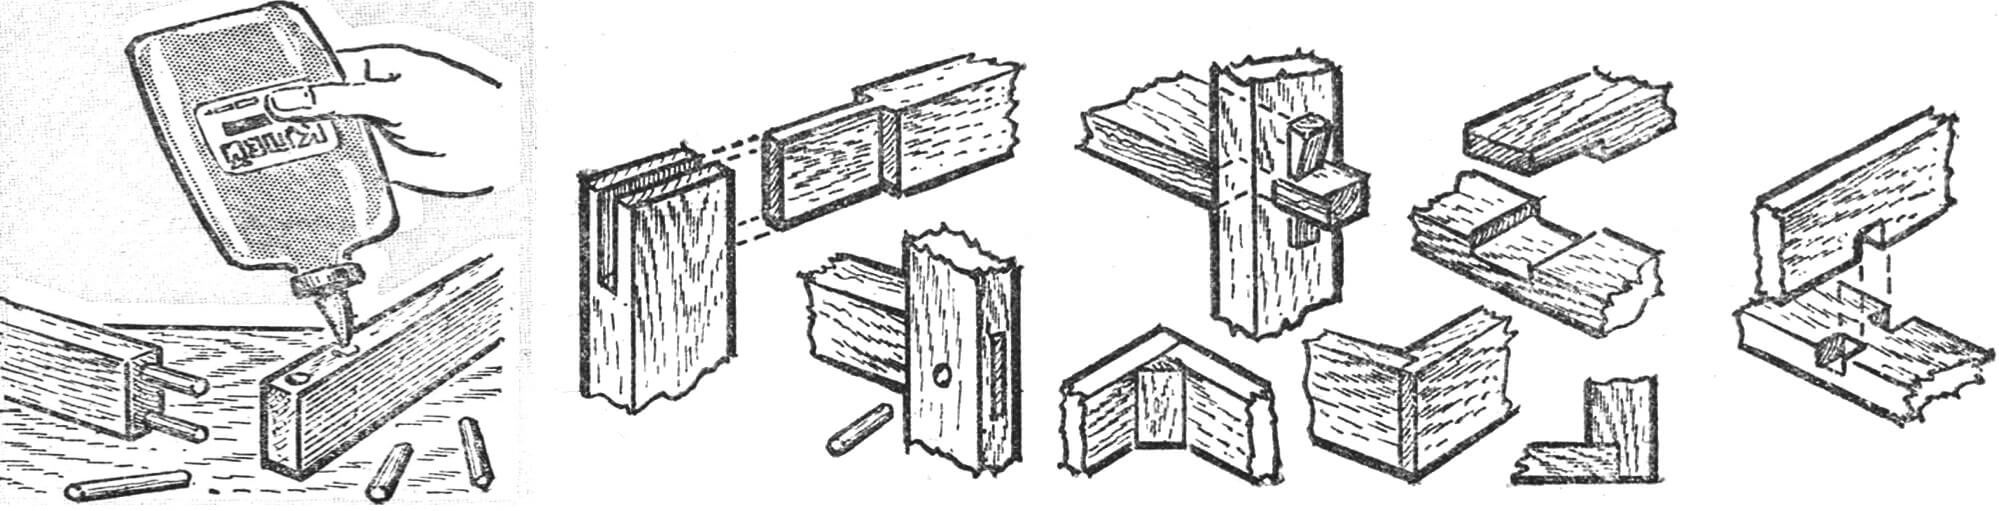 Варианты шиповых соединении деревянных деталей мебельных конструкций.